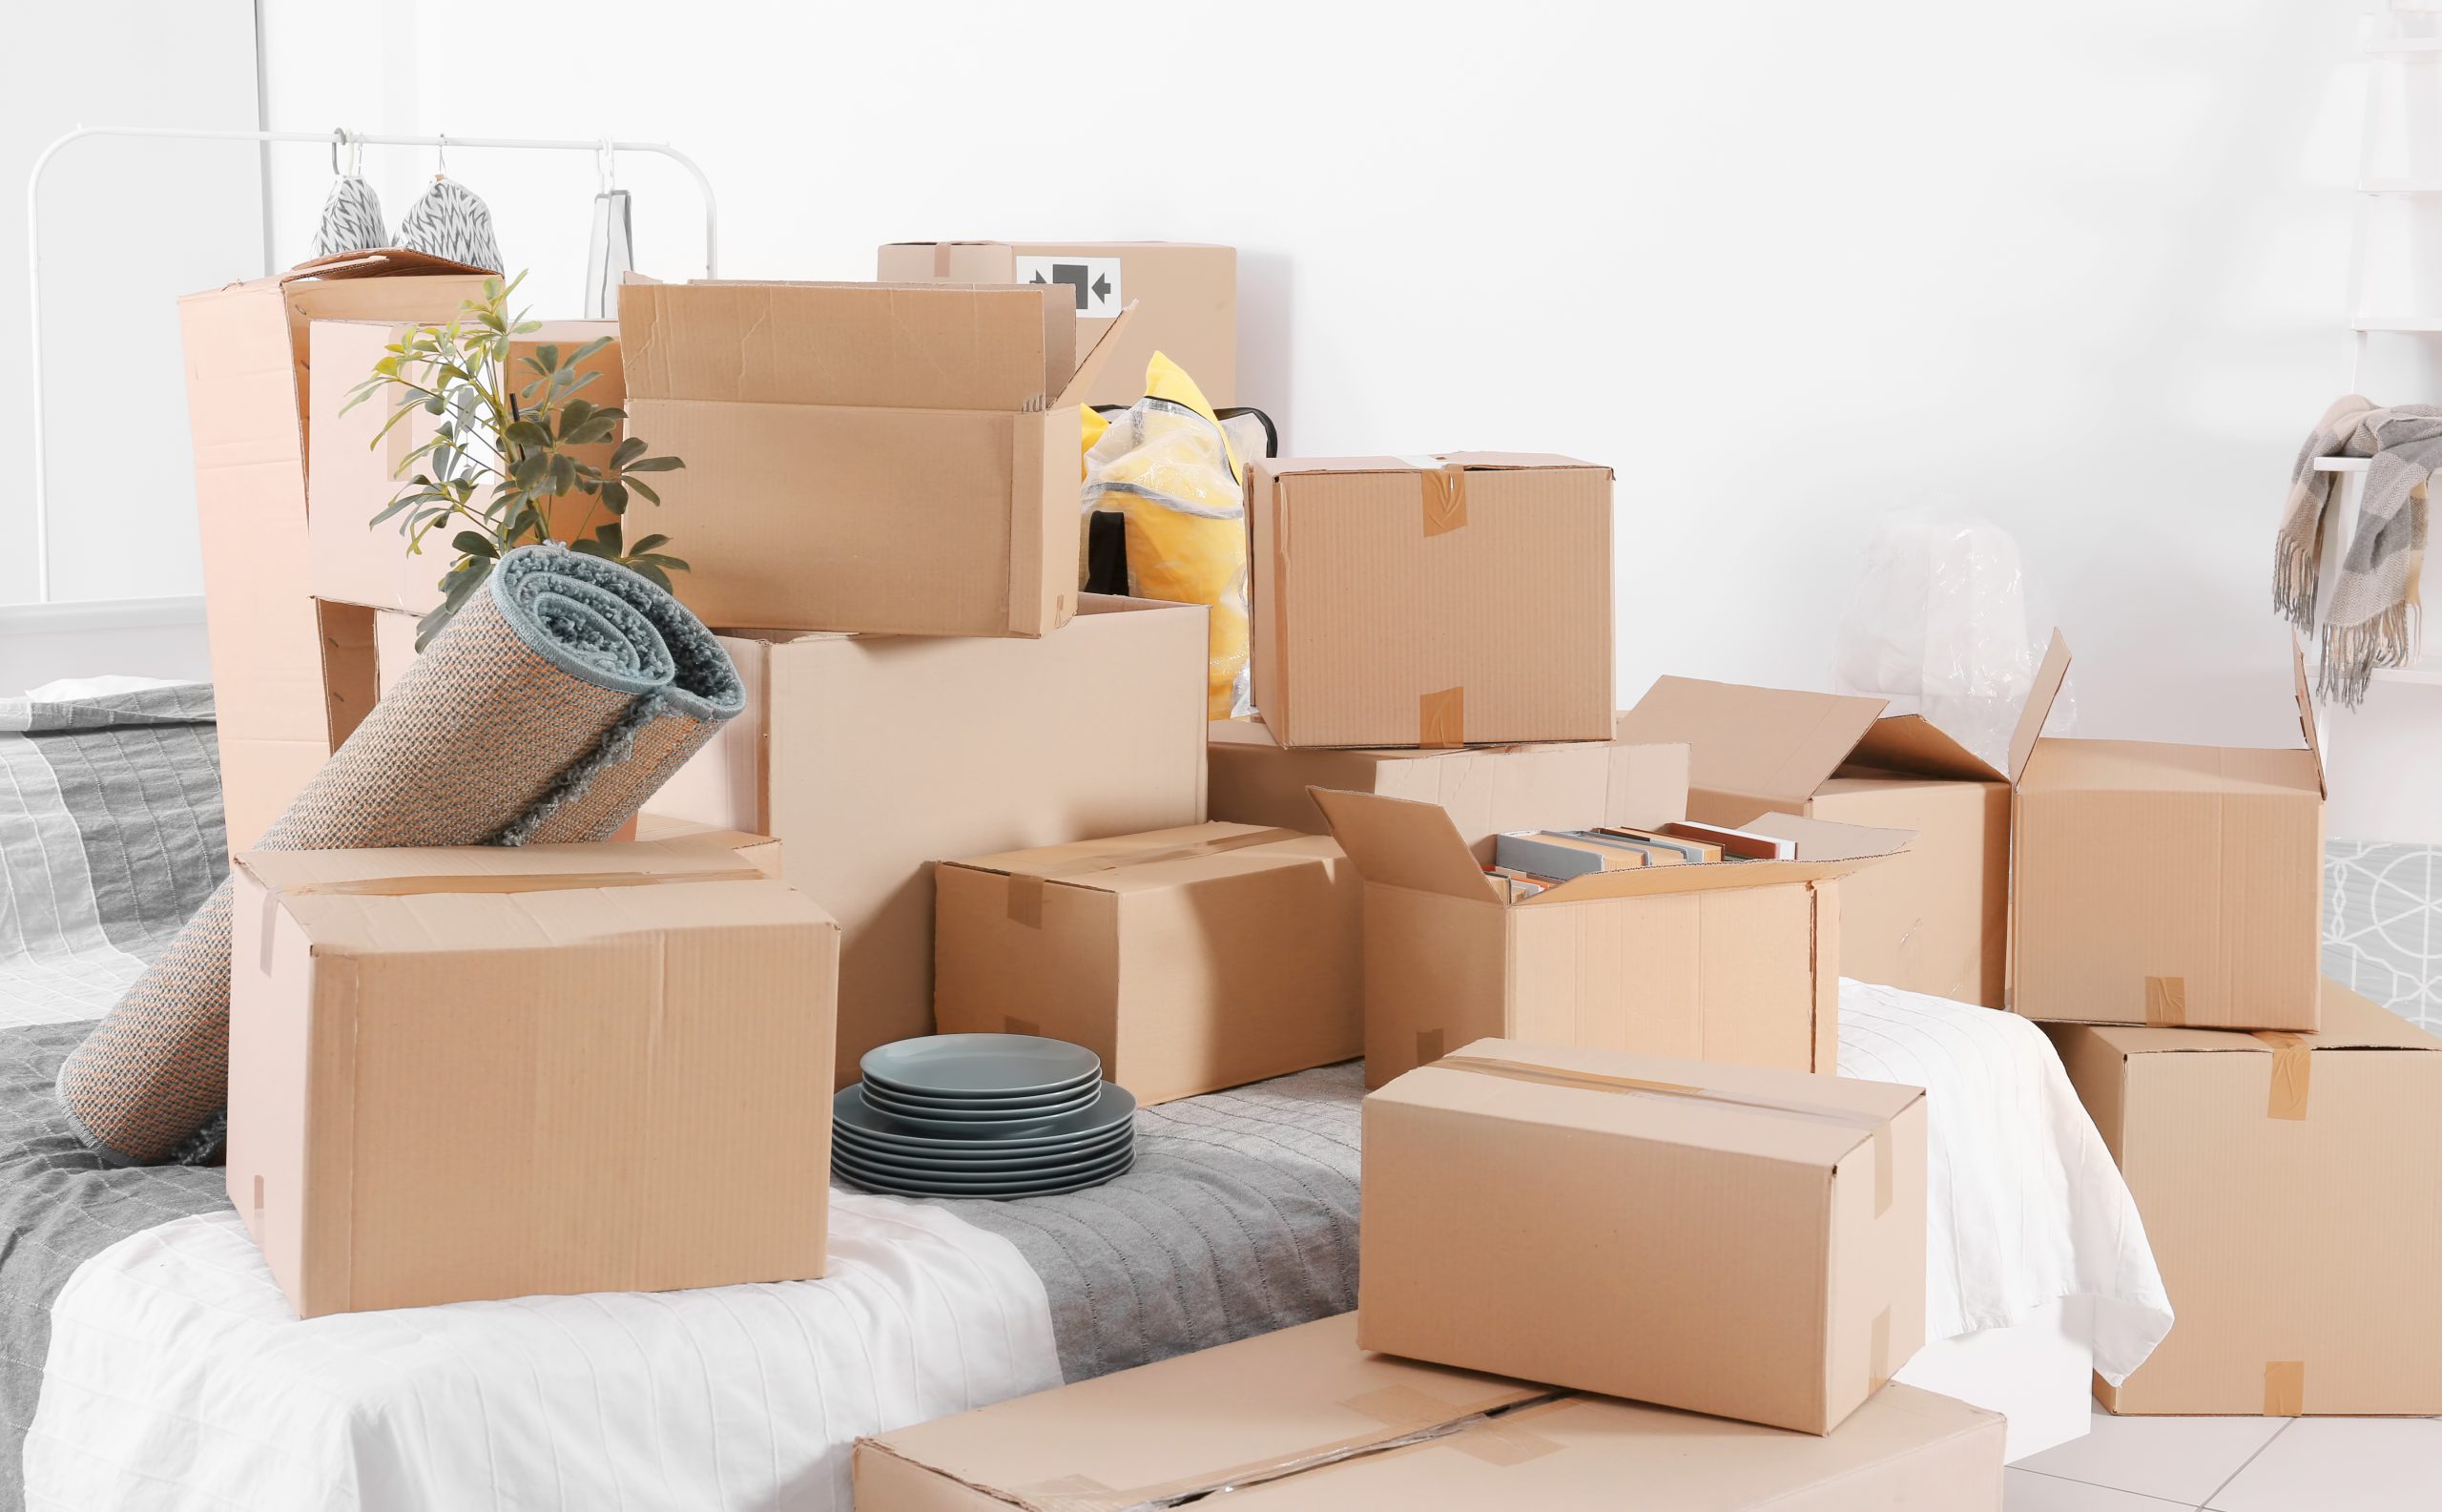 Packaging items. Упаковка вещей для переезда. Упаковка мебели. Коробки для упаковки вещей. Упакованные вещи в коробки.